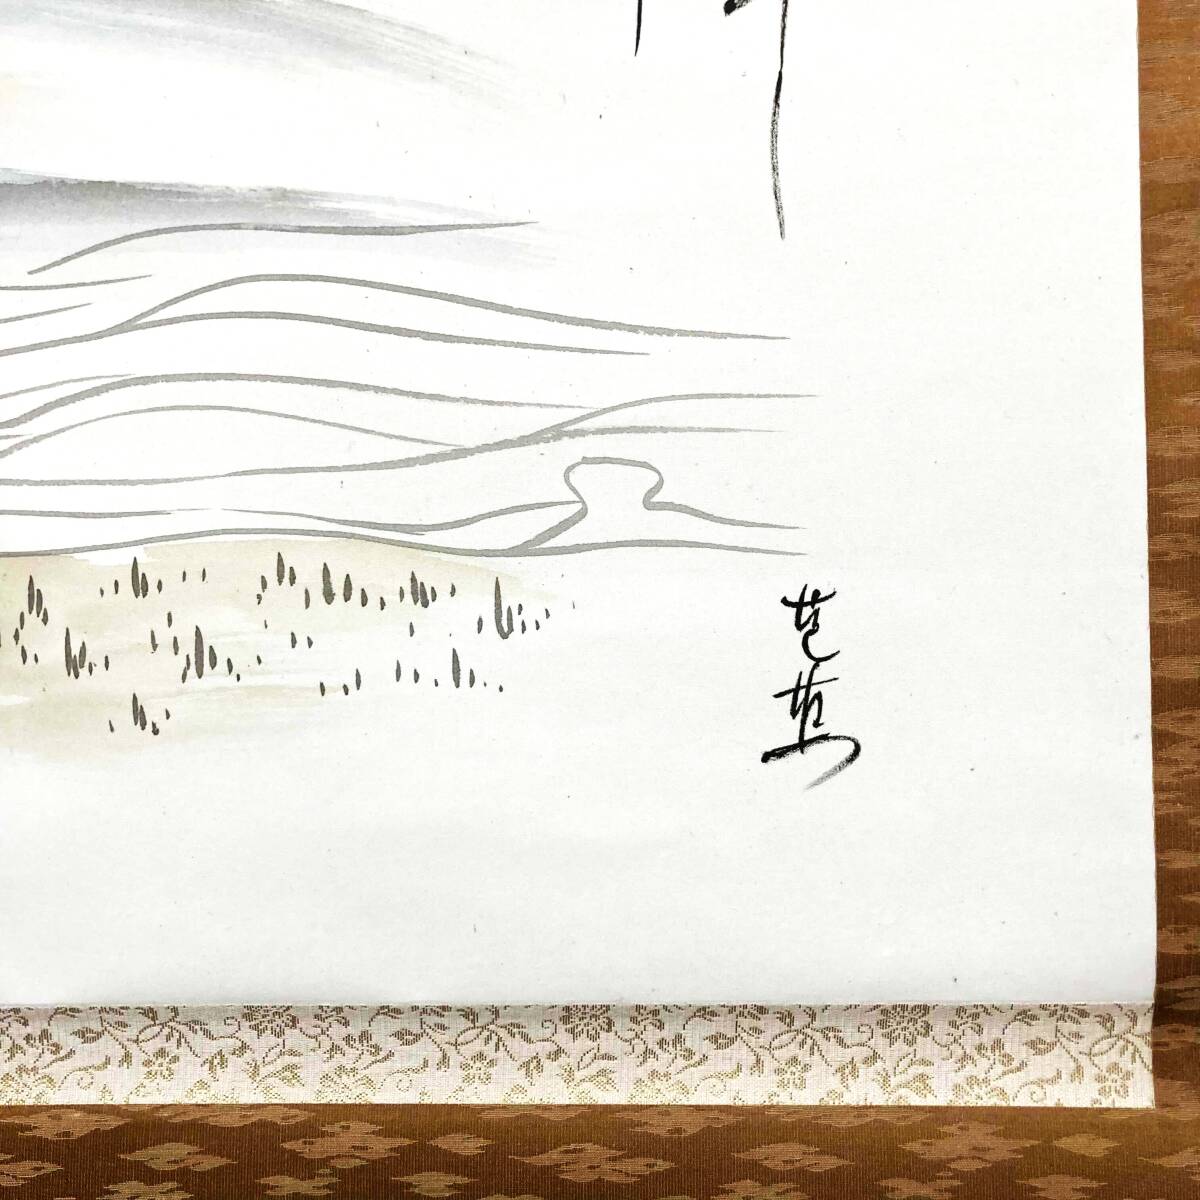 【模写】 青樹 五月雨 松尾芭蕉 句 風景画 人物画 掛軸 掛け軸 落款印_画像5